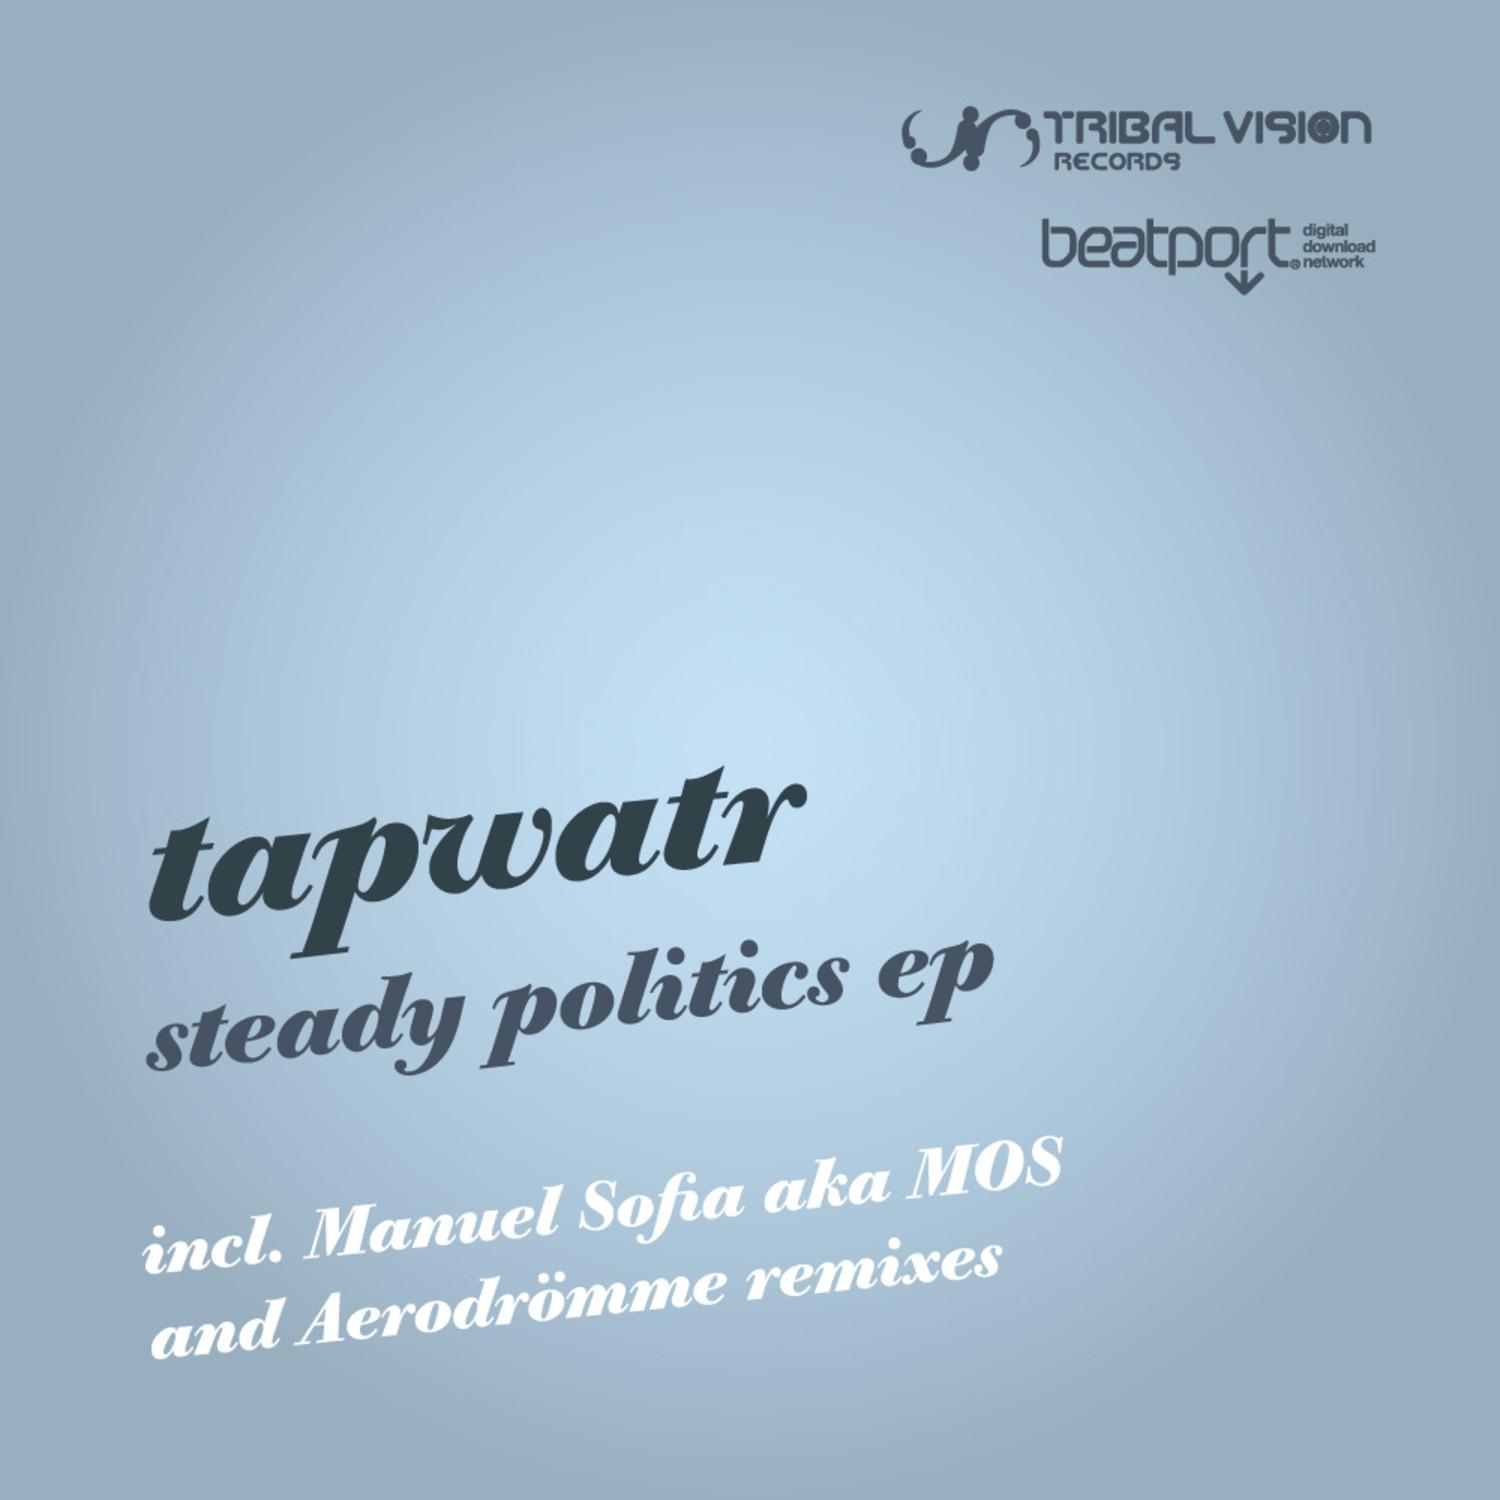 Tapwatr - Steady Politics (Aerodromme remix)